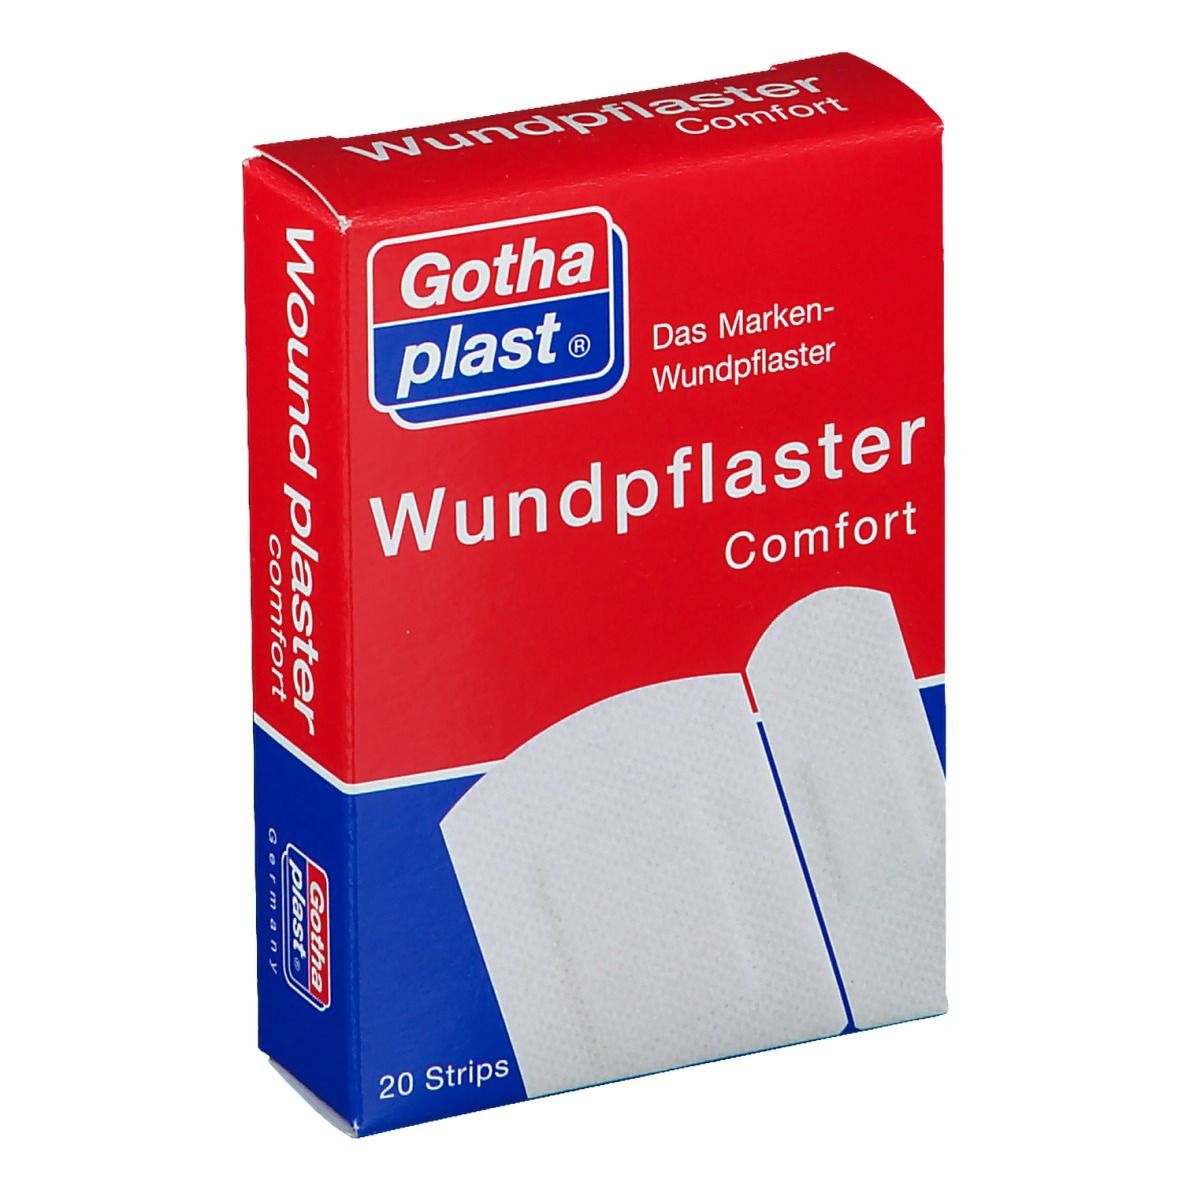 Gothaplast® Wundpflaster Comfort 2 Größen